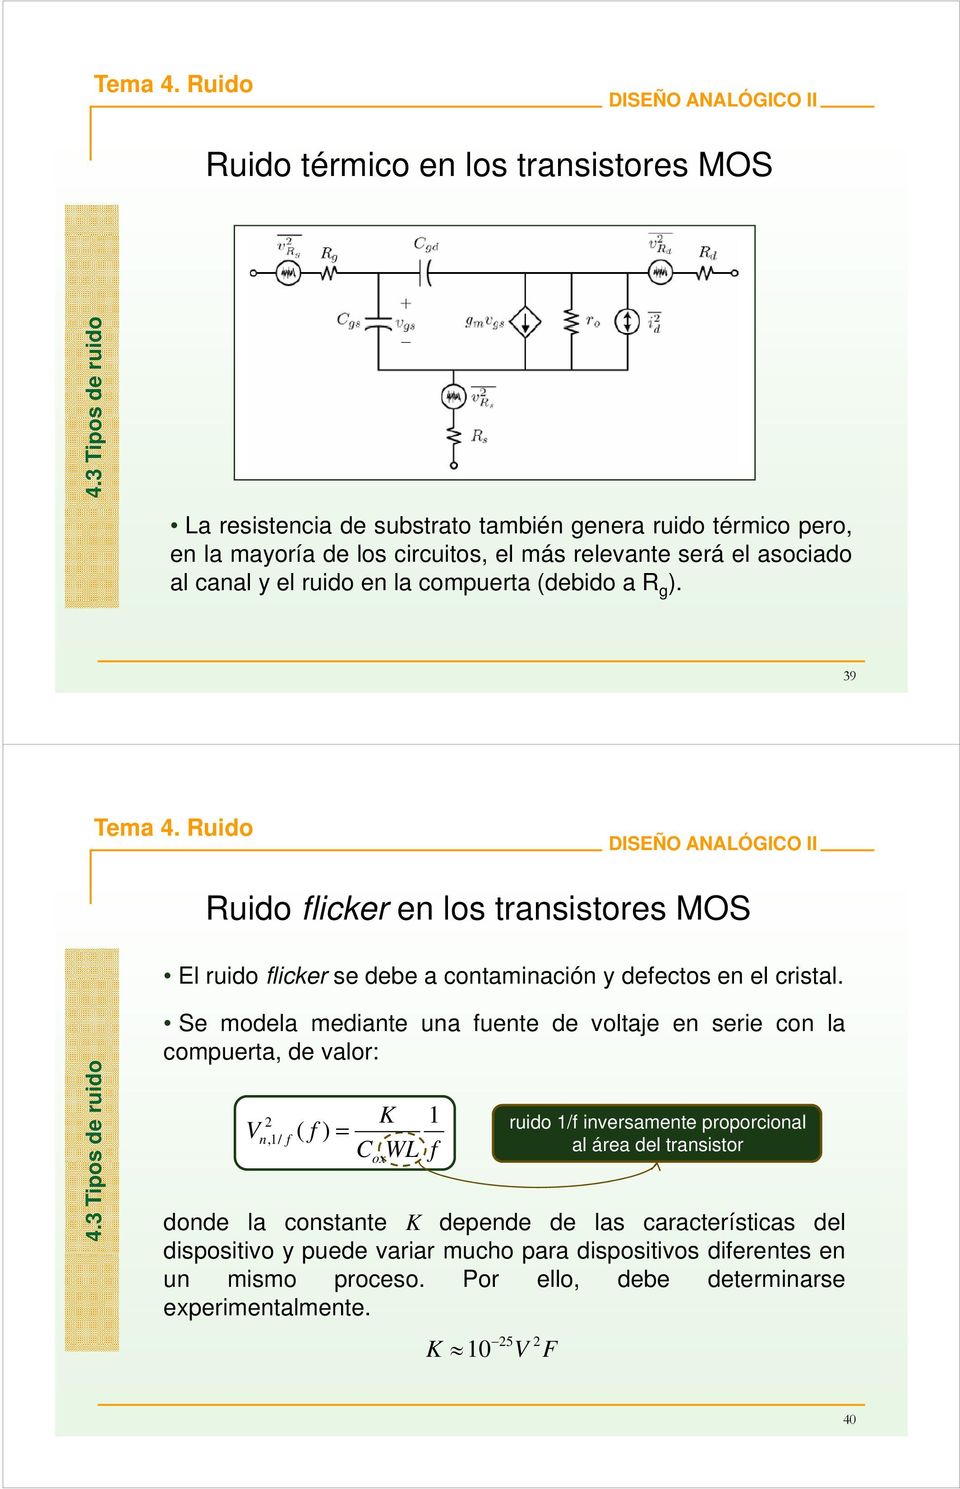 (debido a R g. 39 Ruido flicker en los transistores MOS El ruido flicker se debe a contaminación y defectos en el cristal. s de ruido 4.